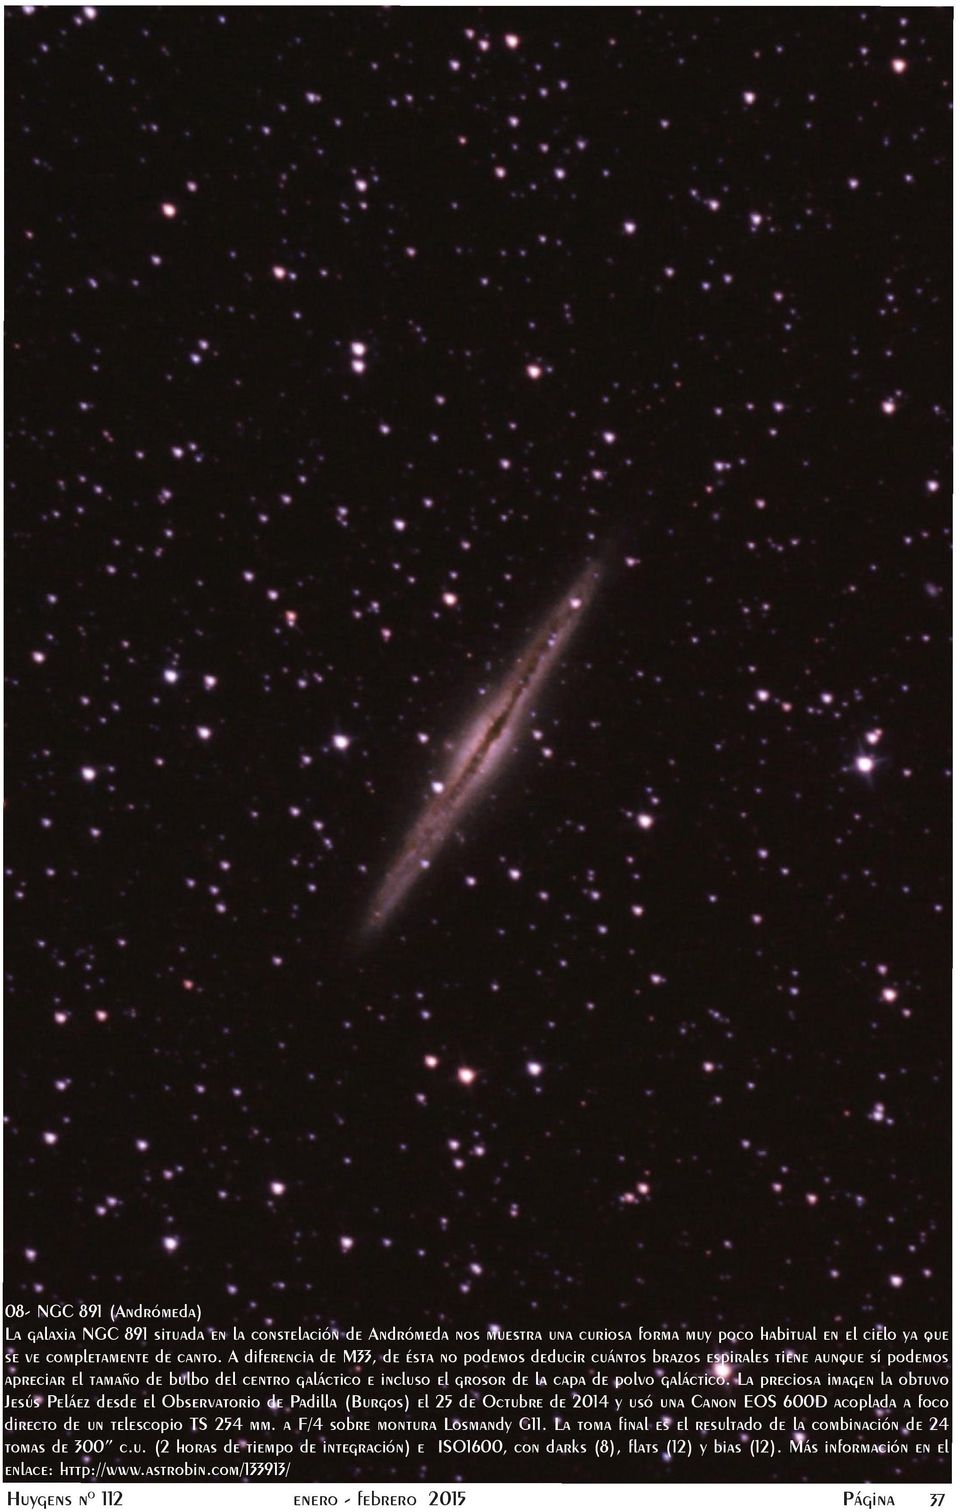 La preciosa imagen la obtuvo Jesús Peláez desde el Observatorio de Padilla (Burgos) el 25 de Octubre de 2014 y usó una Canon EOS 600D acoplada a foco directo de un telescopio TS 254 mm.